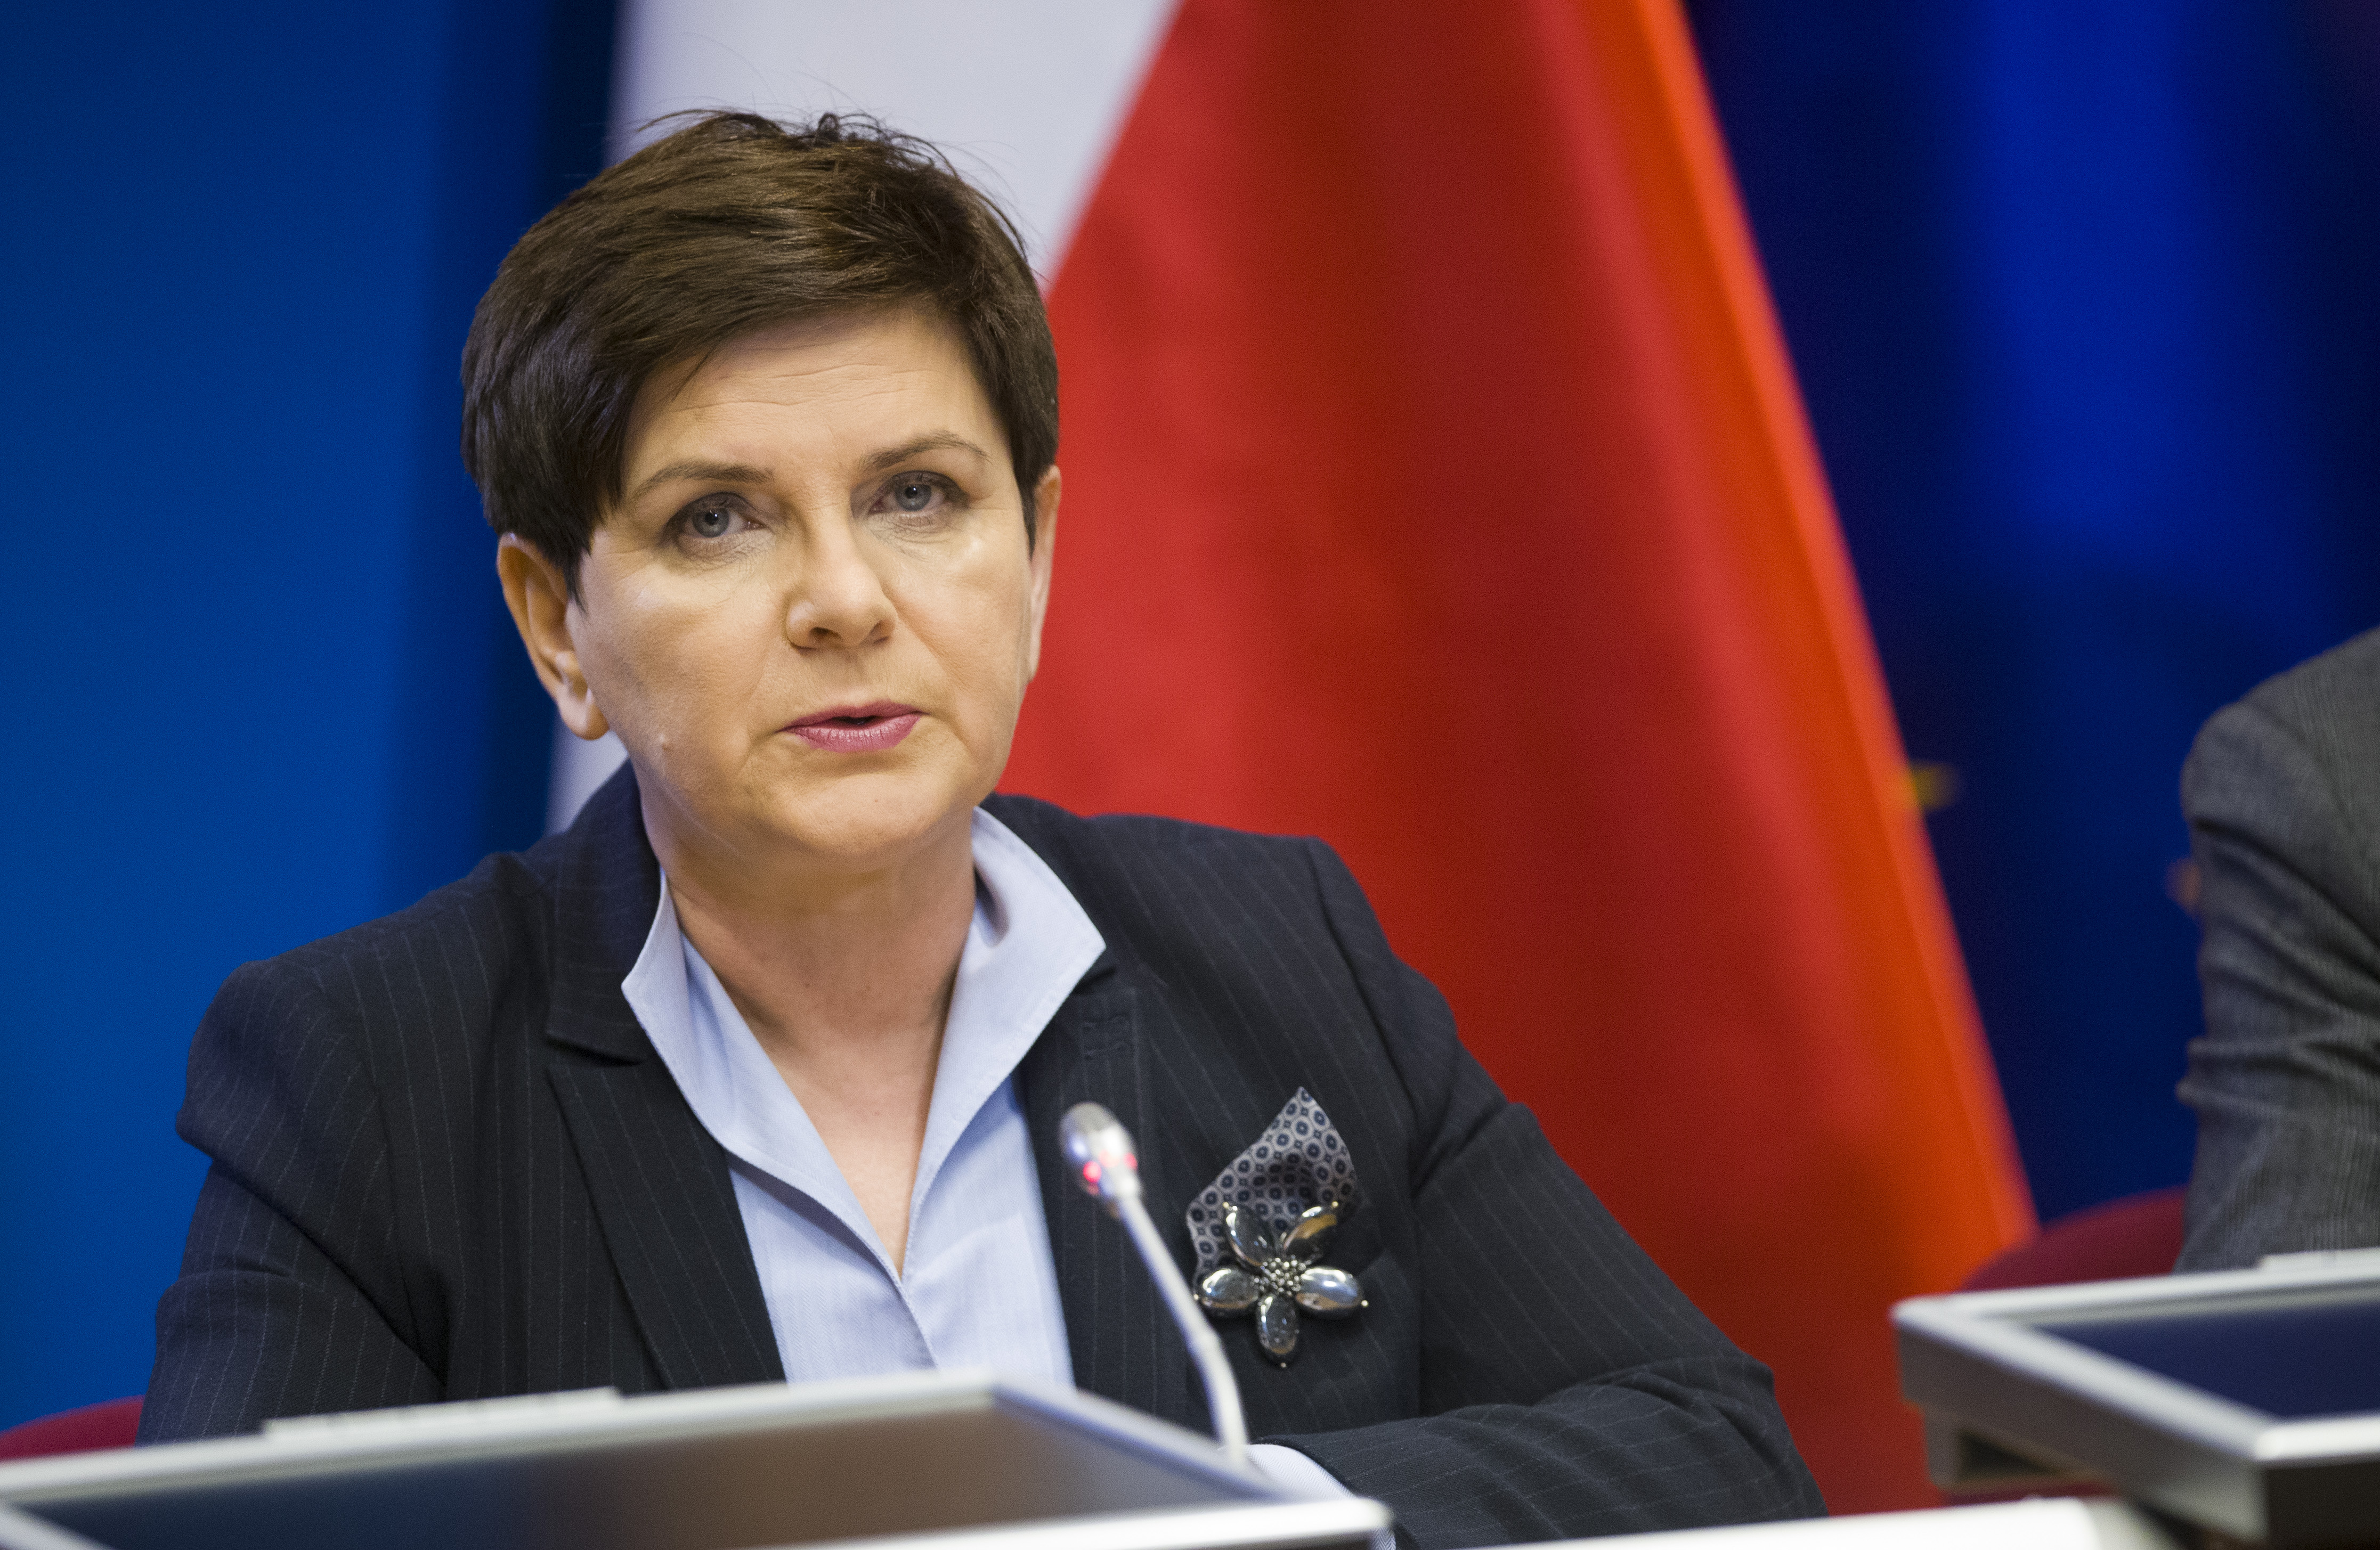 Beata Szydlo, ex premier della Polonia / © European Union 2017